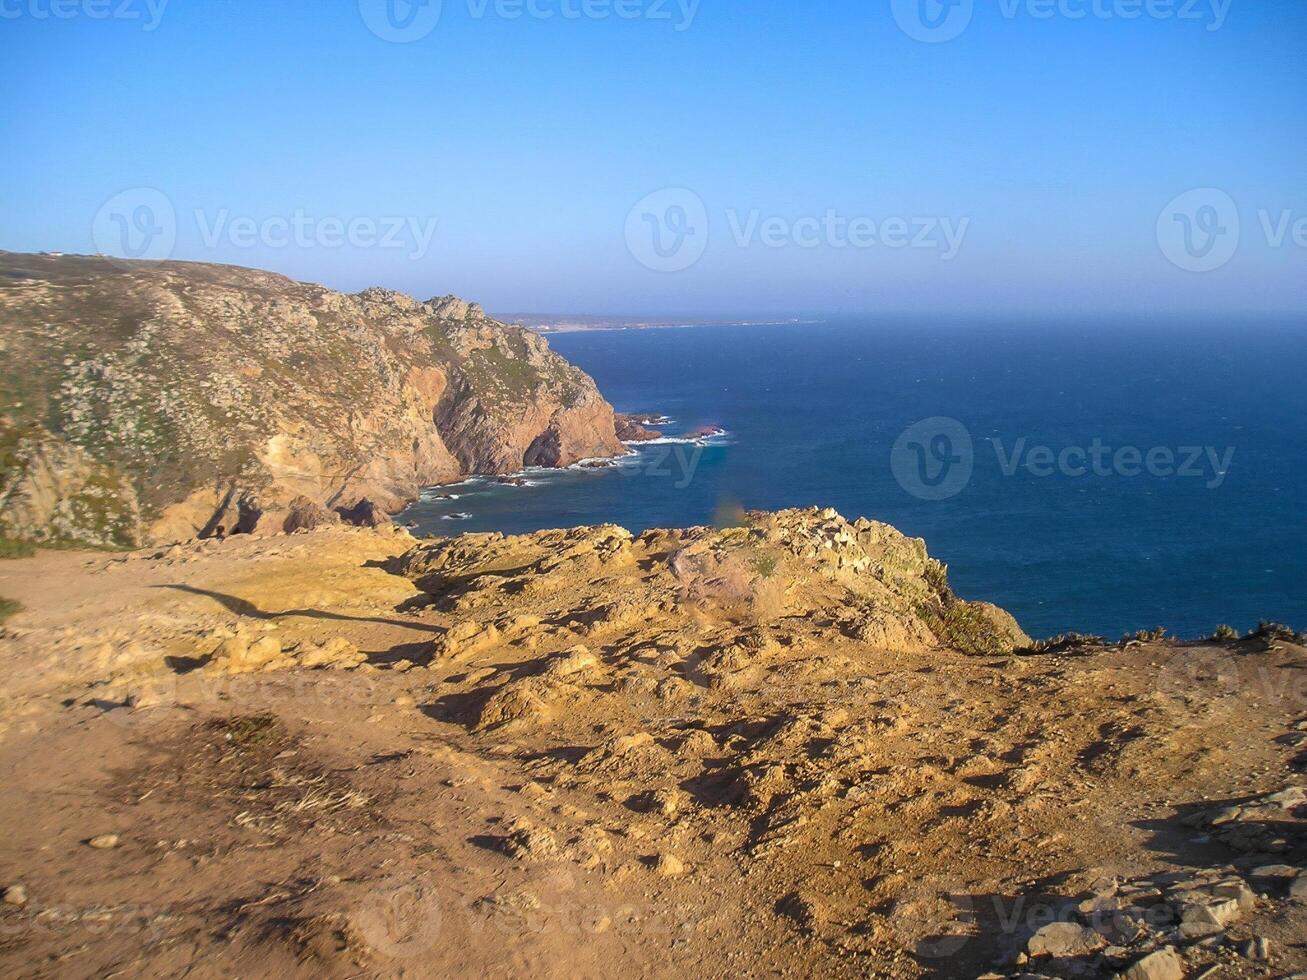 cabo da rocca, collocato nel Portogallo, è rinomato come il più occidentale punto di continentale Europa. foto